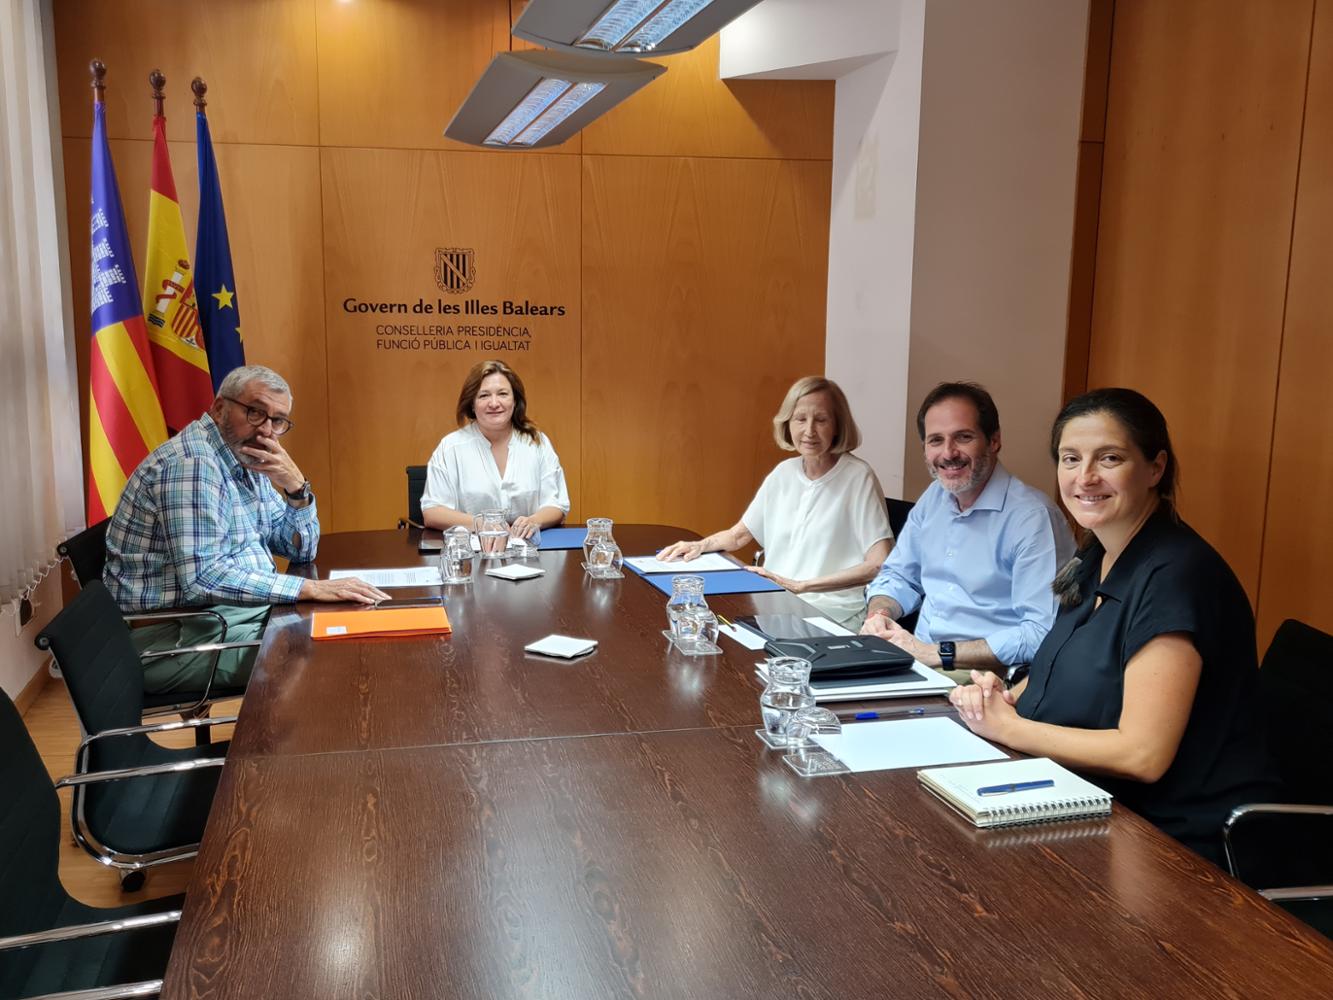 La Fundación ANAR y el Gobierno de las Islas Baleares firman un convenio de colaboración para mejorar la atención a menores de edad en situaciones de riesgo